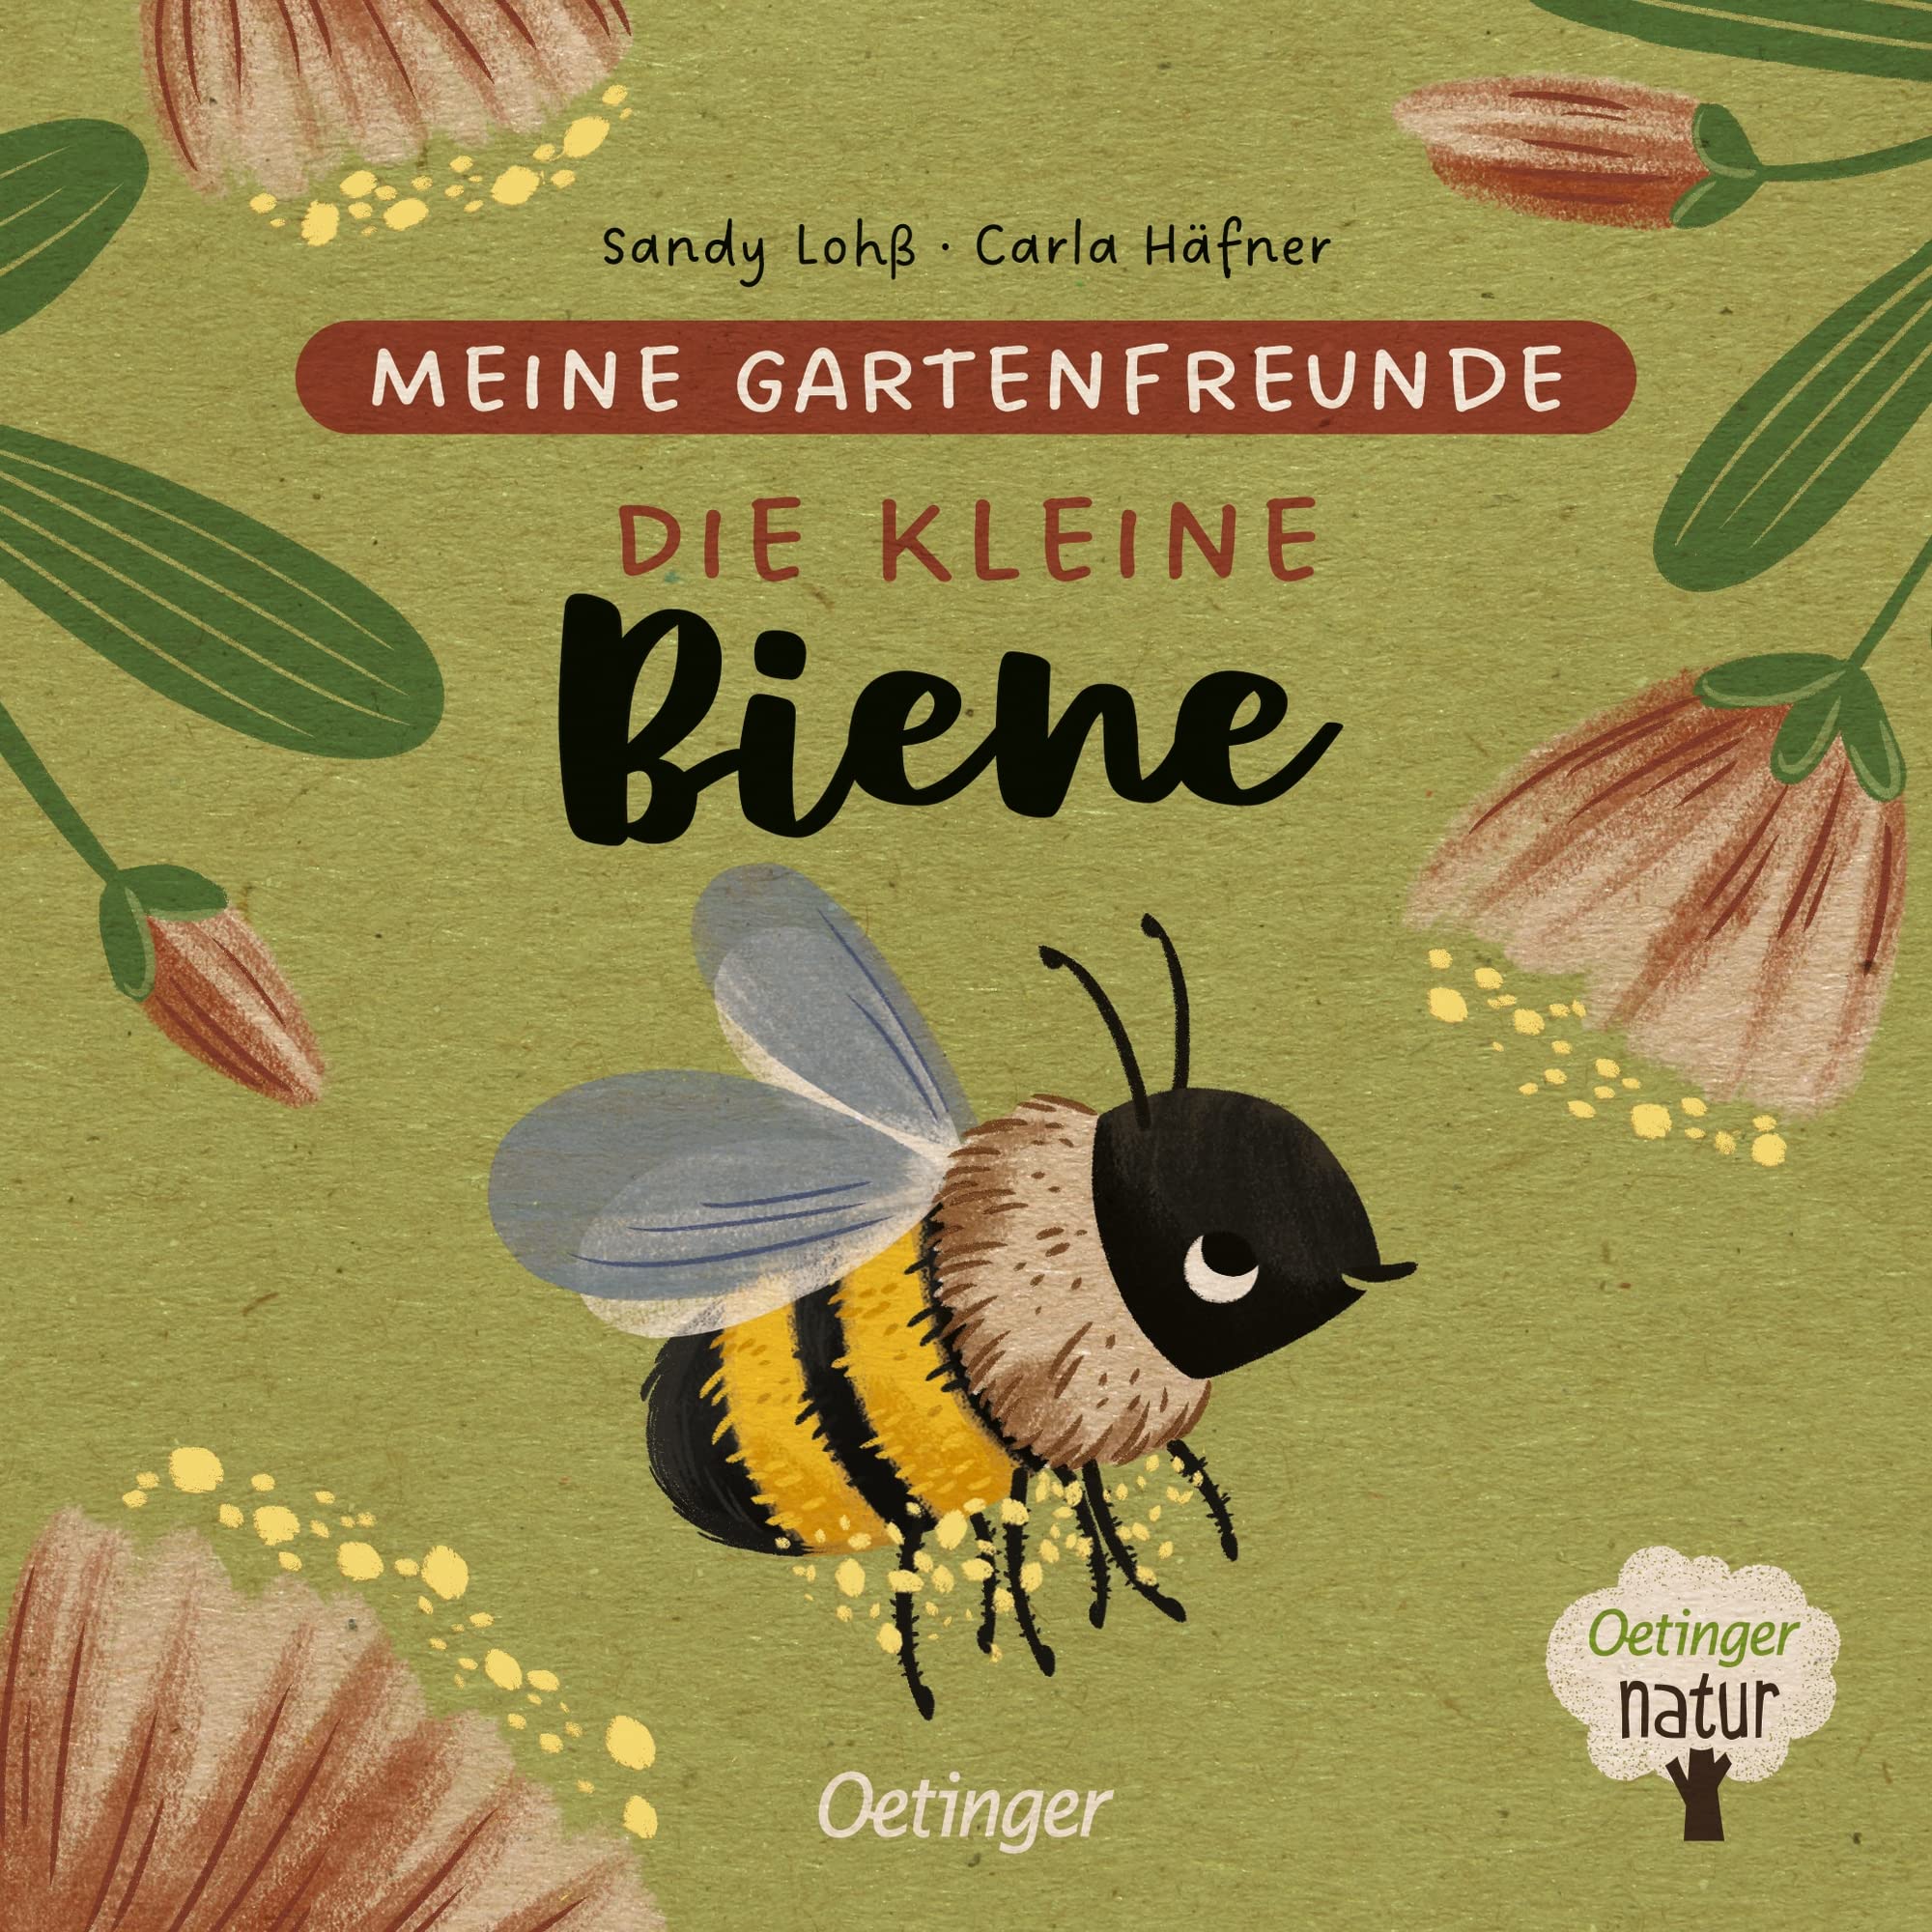 Meine Gartenfreunde. Die kleine Biene: Nachhaltig hergestelltes Öko-Pappbilderbuch für die Kleinsten